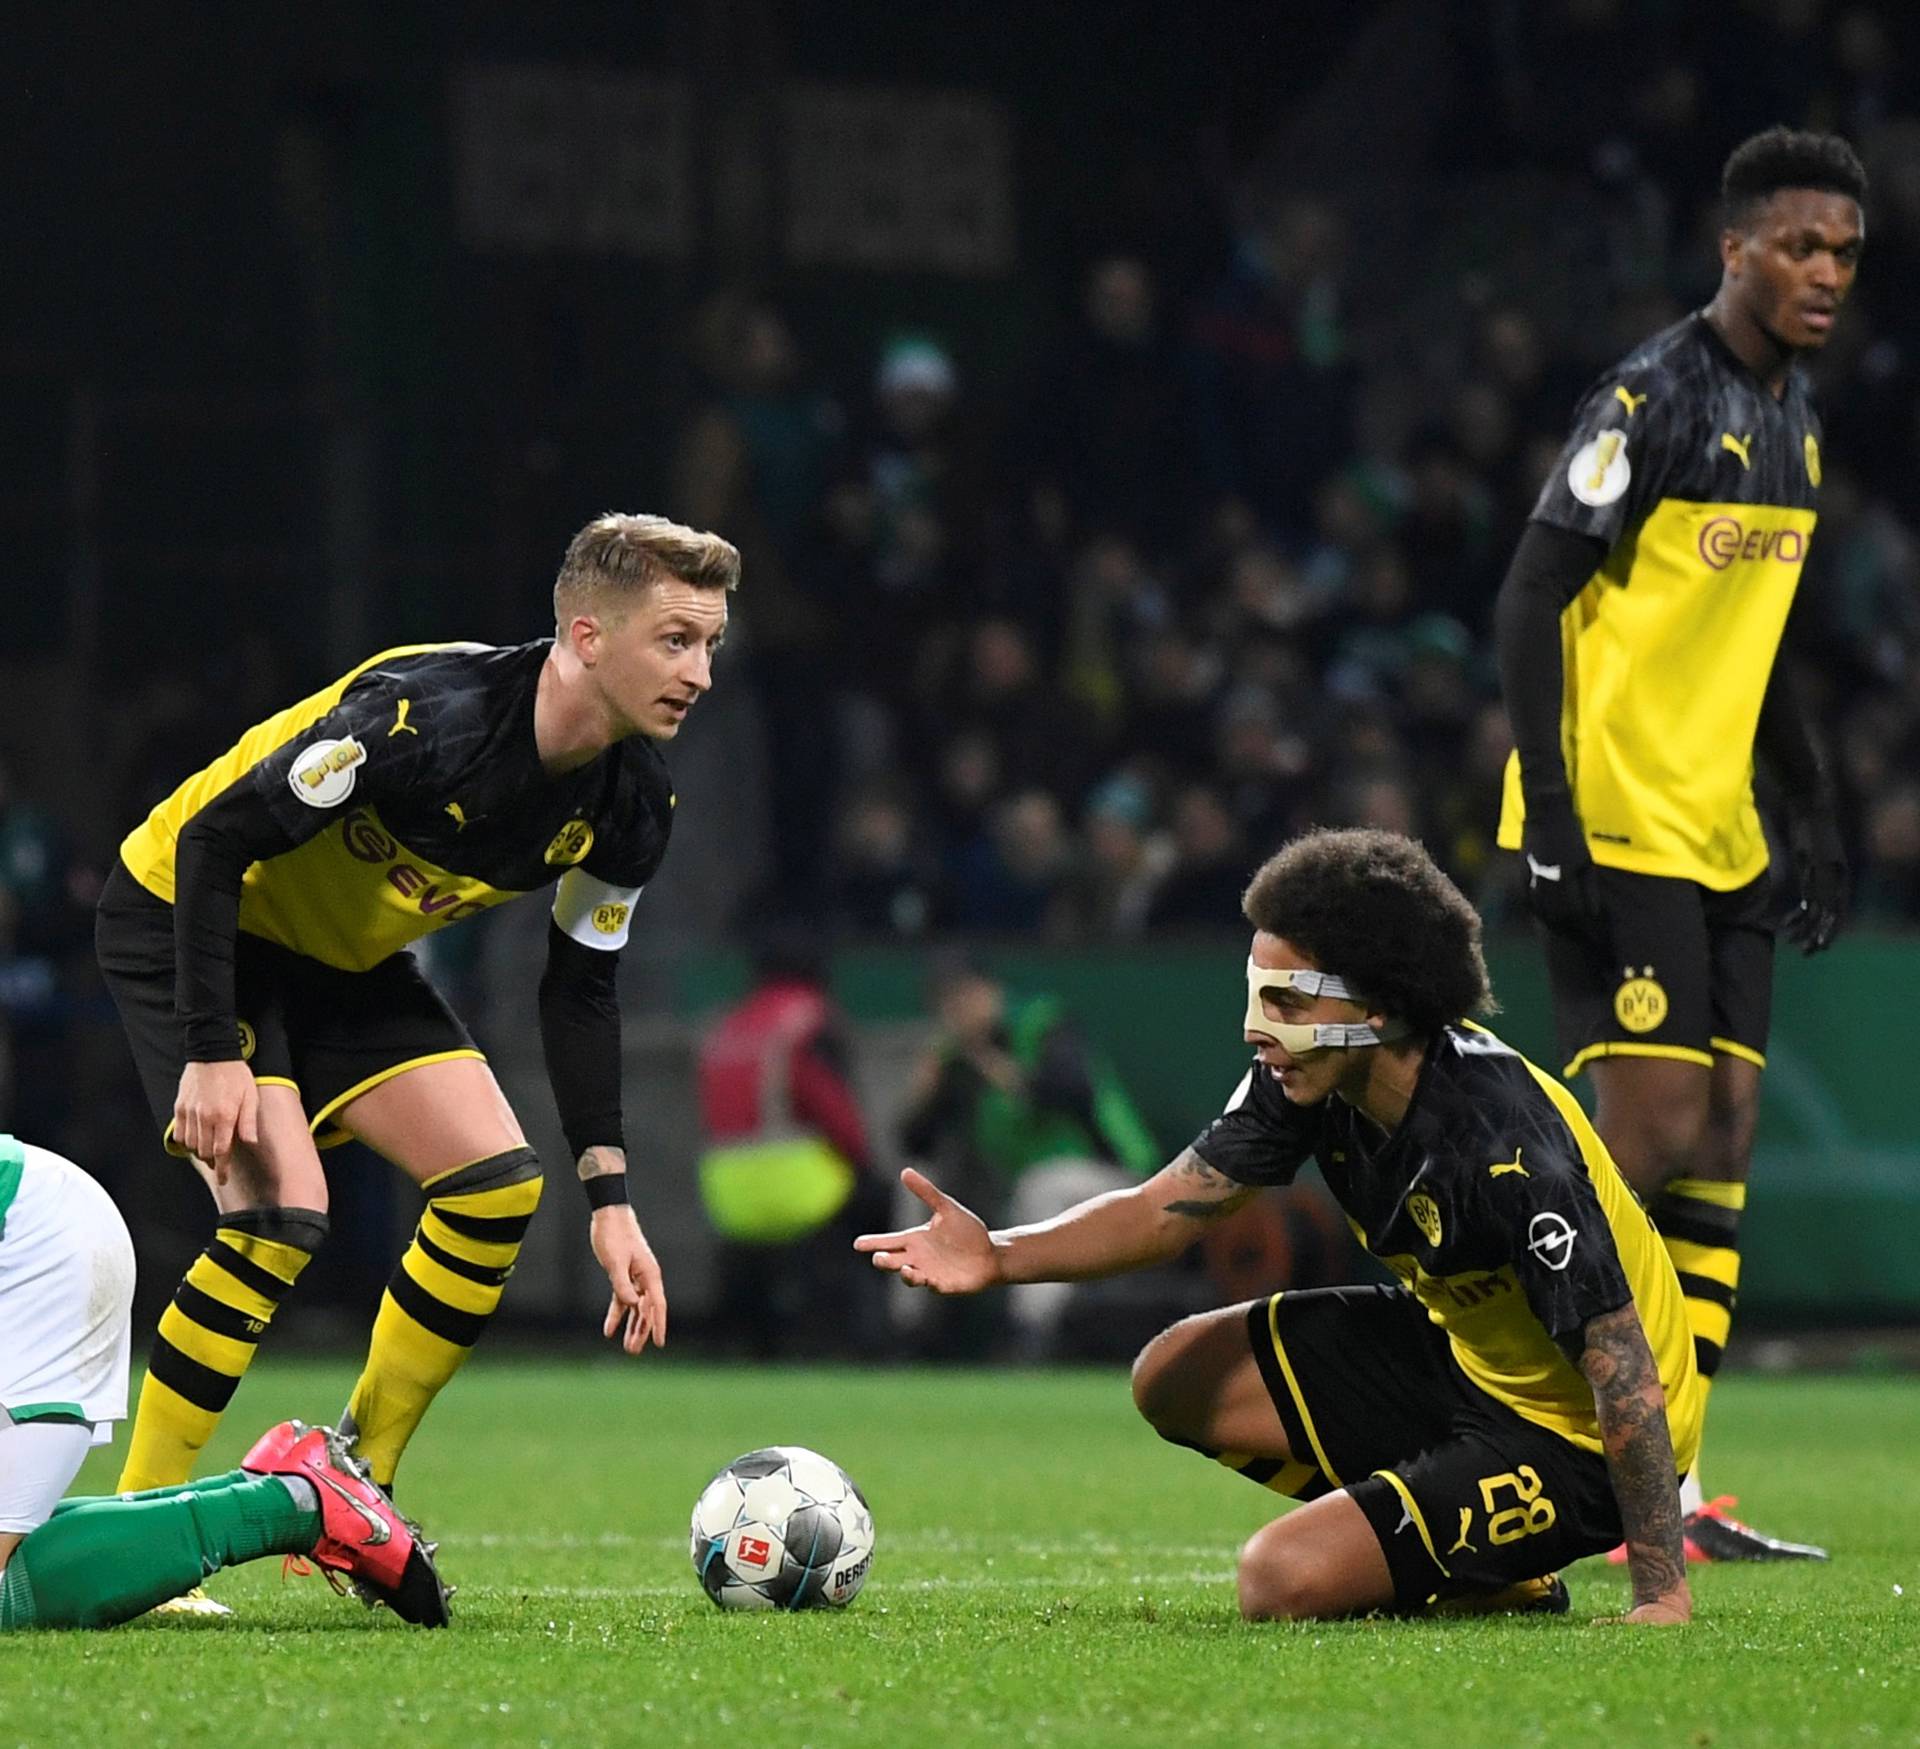 DFB Cup - Third Round - Werder Bremen v Borussia Dortmund